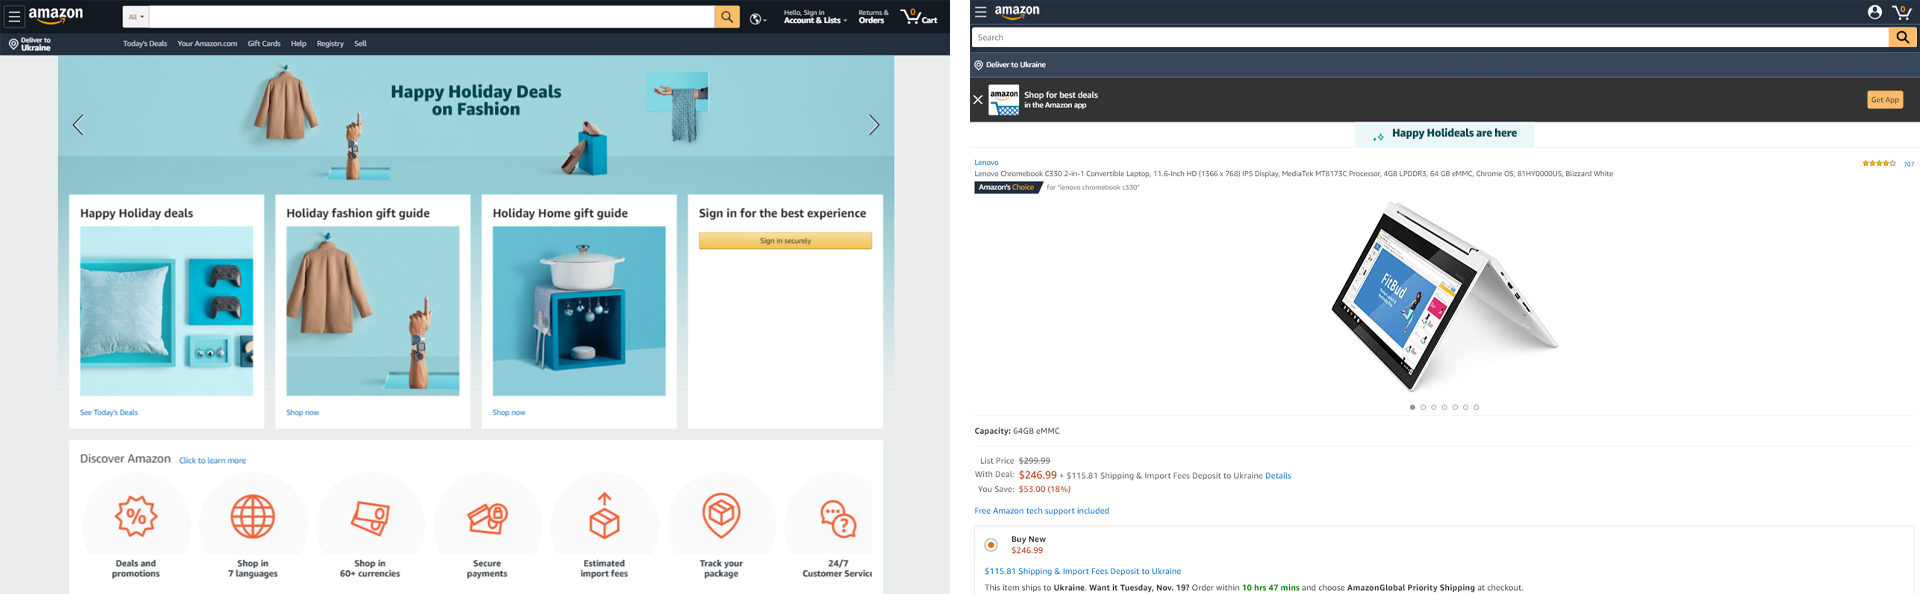 Amazon website design screenshot